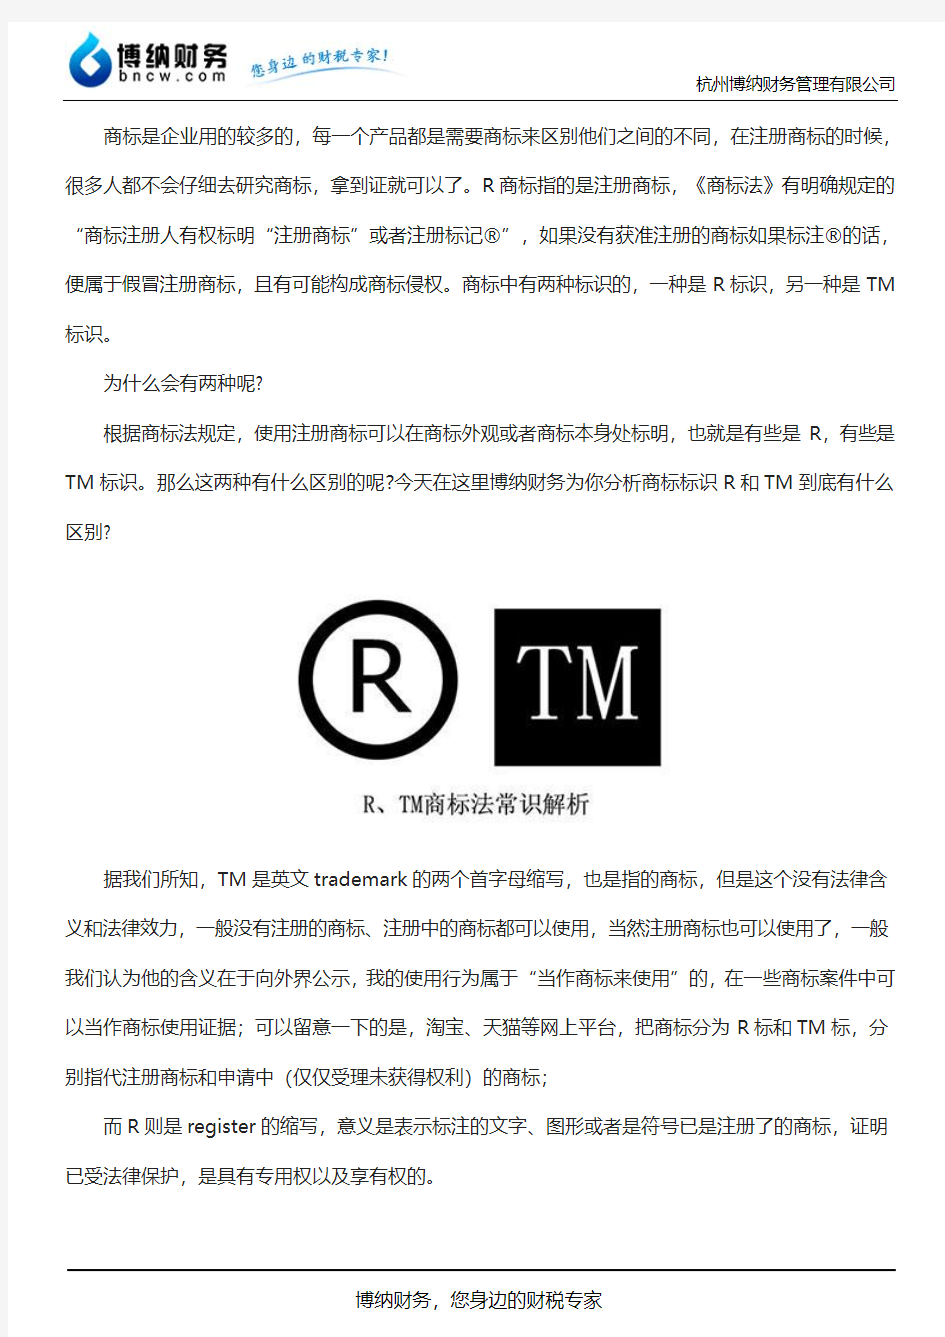 商标中“R”标和TM标的区别及使用须知